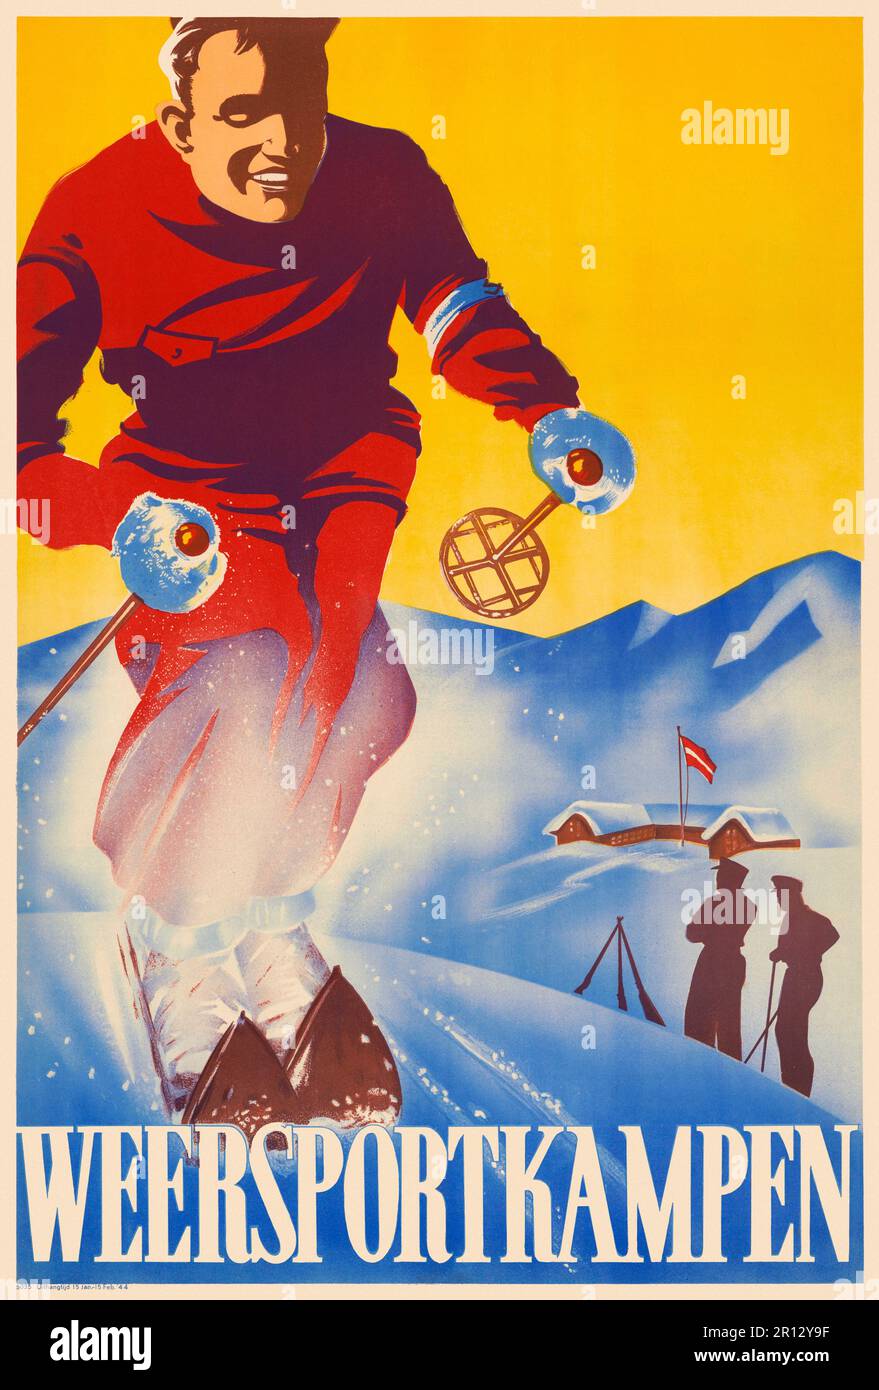 Weersportkampen. Künstler unbekannt. Poster veröffentlicht 1944 in den Niederlanden. Stockfoto